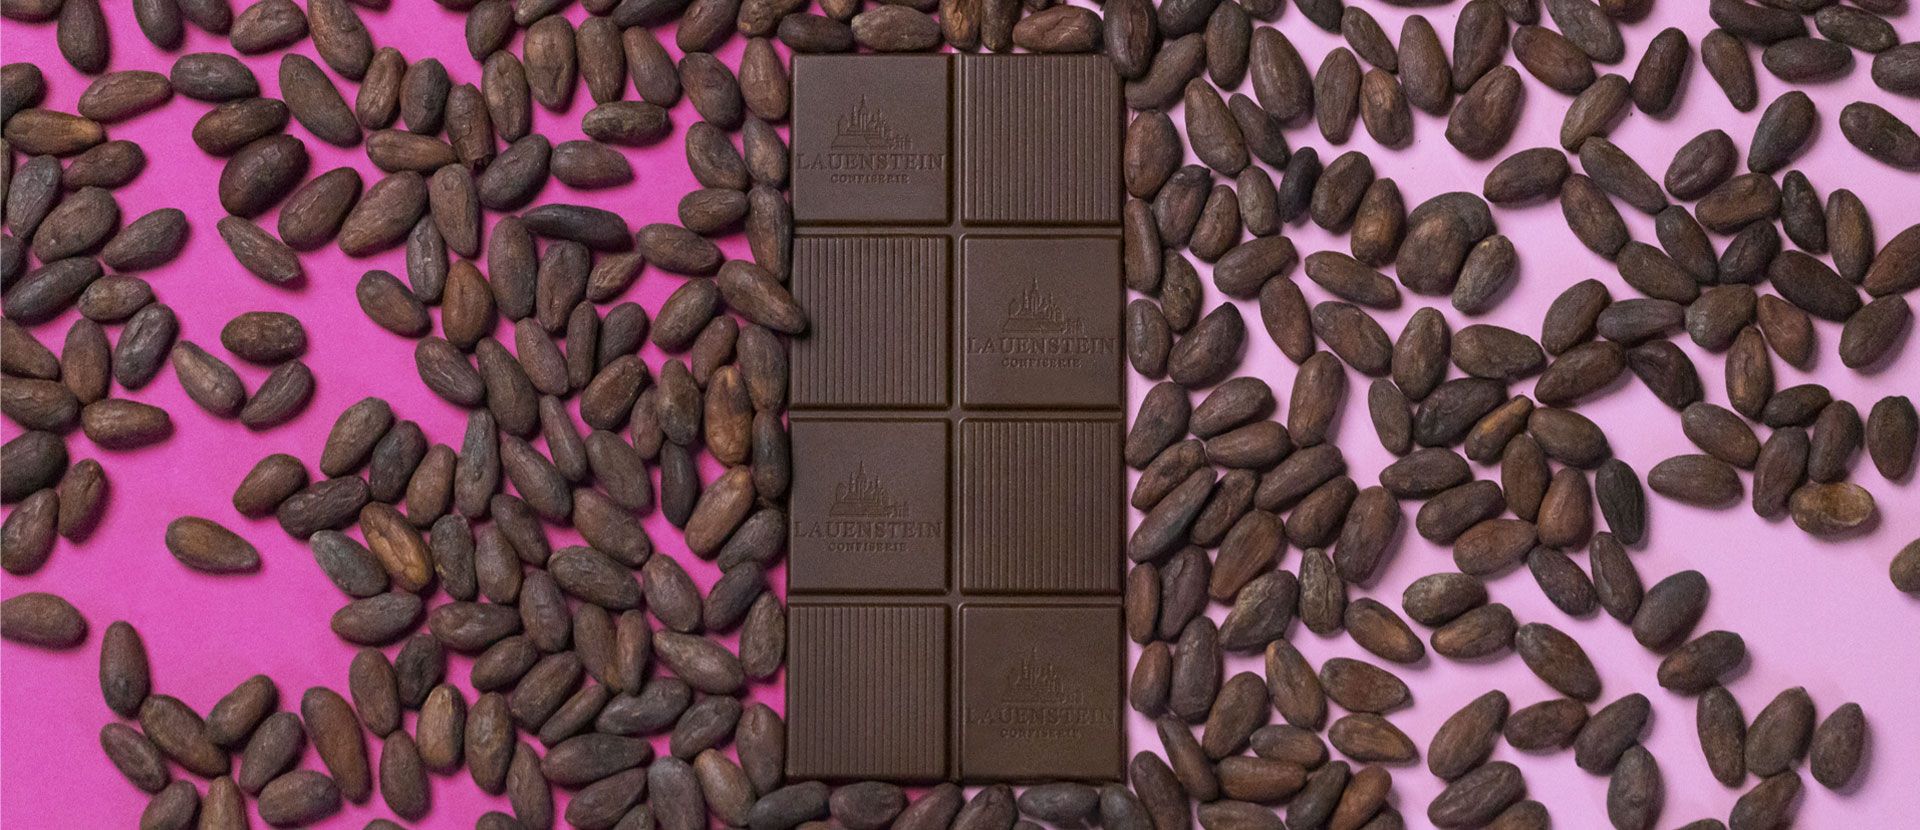 Lauensteiner Tafelschokolade umringt von Kakaobohnen